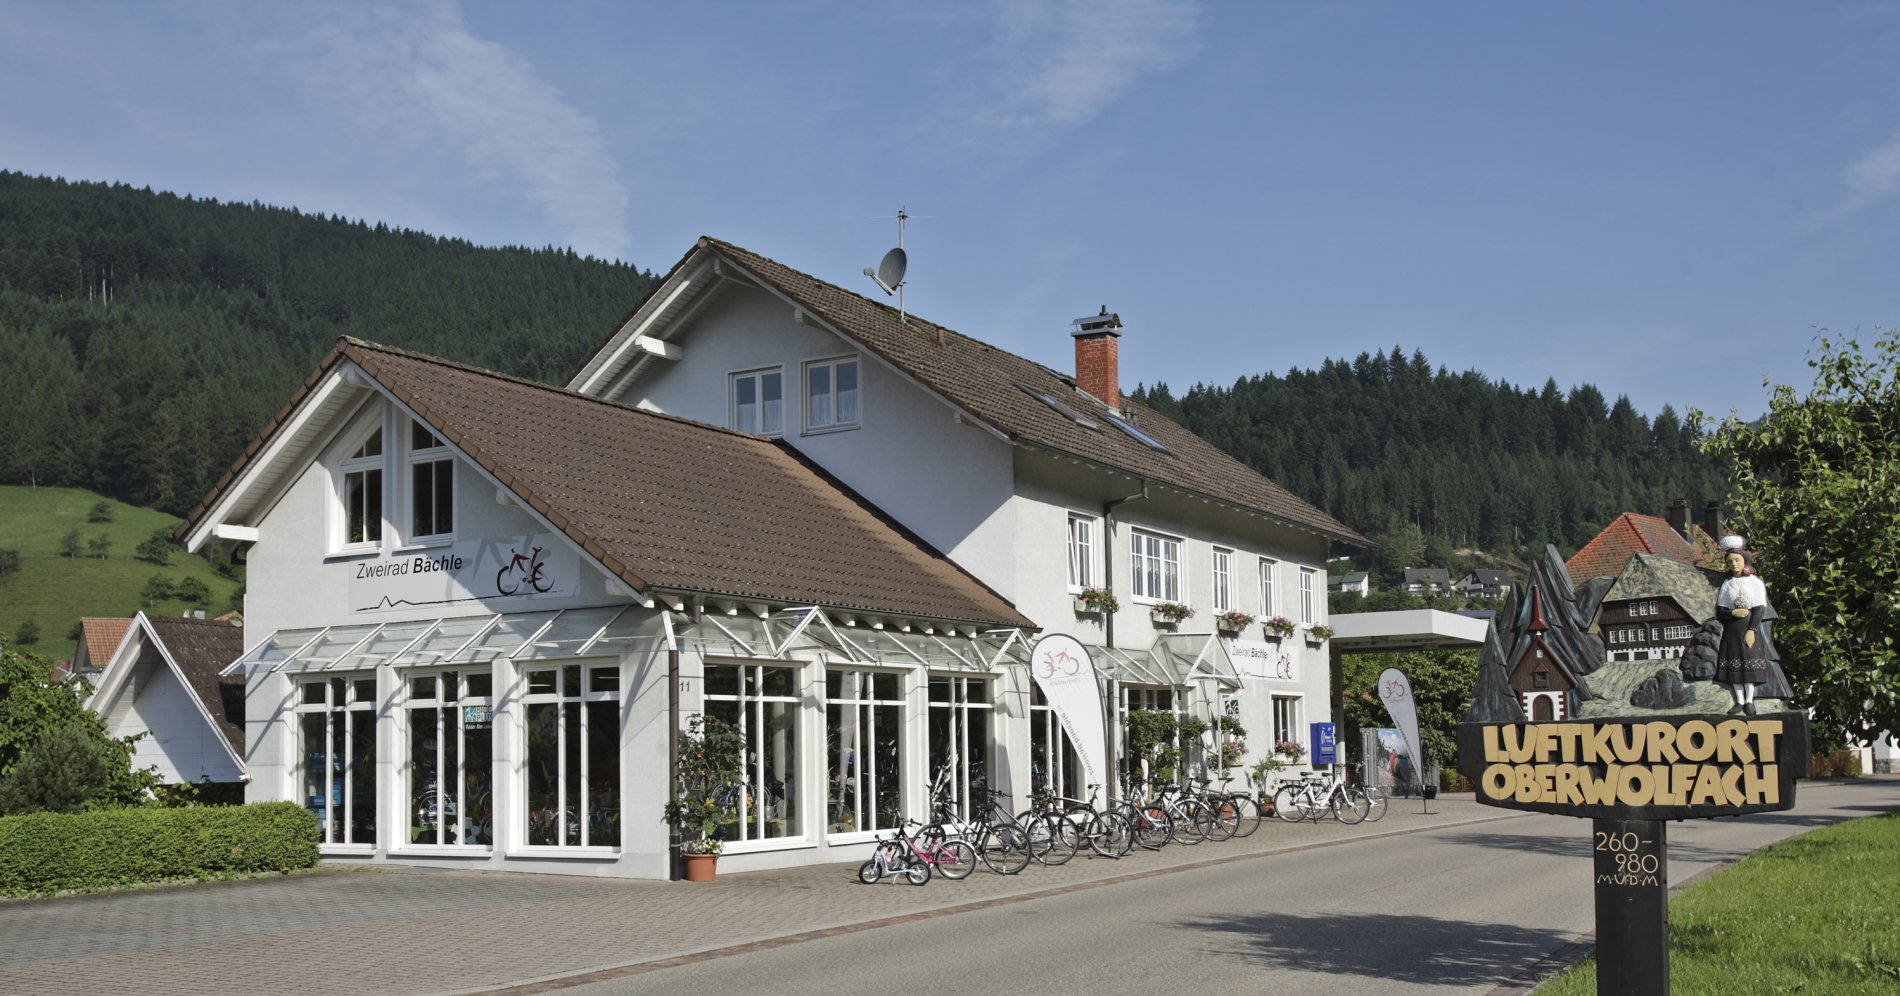 Radgeschäft Zweirad-Bächle in Oberwolfach